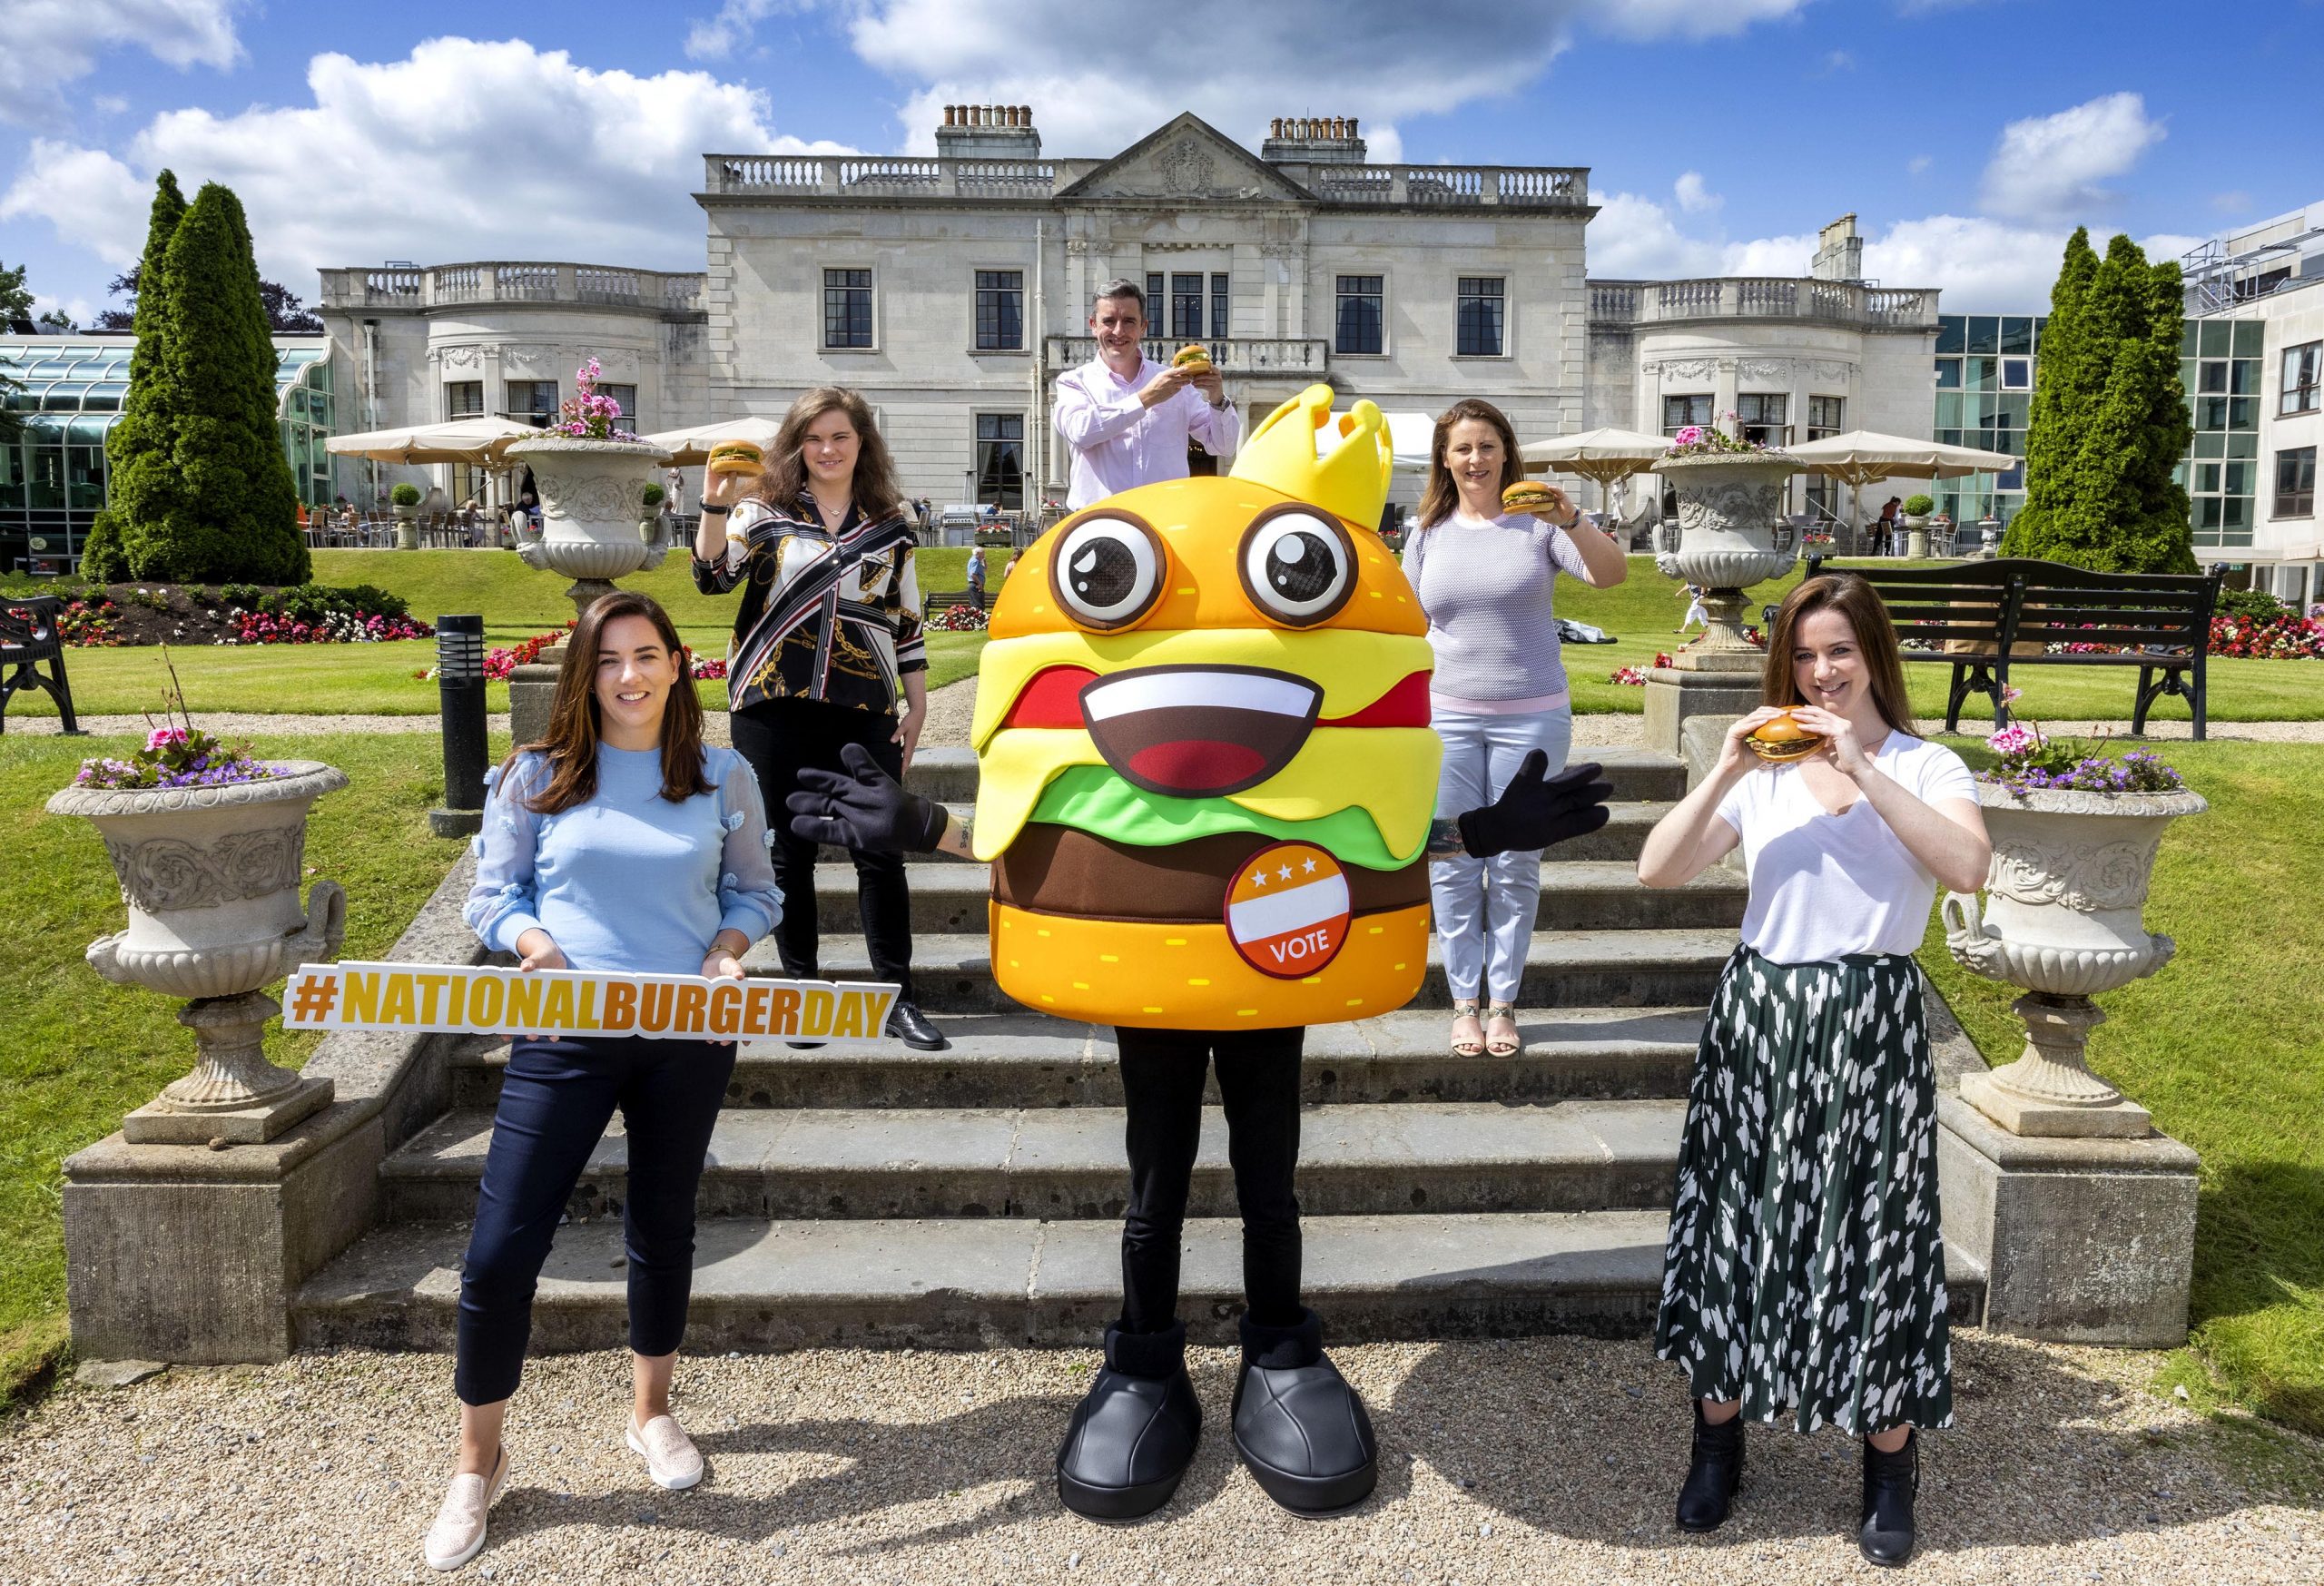 Battle for Ireland’s best burger hots up